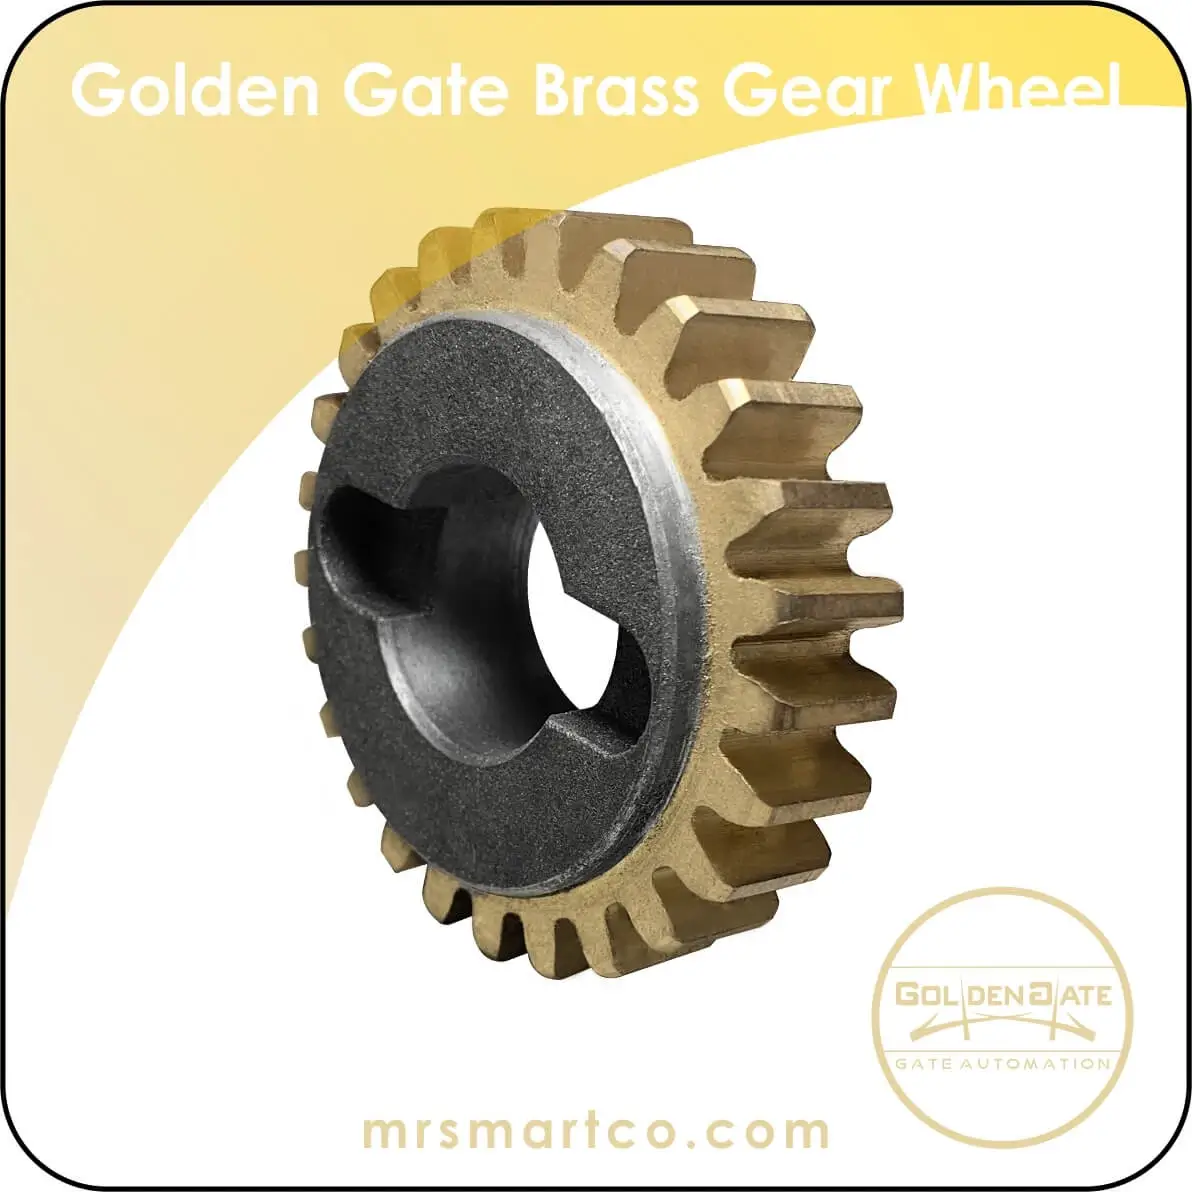 Golden Gate sliding brass gear wheel